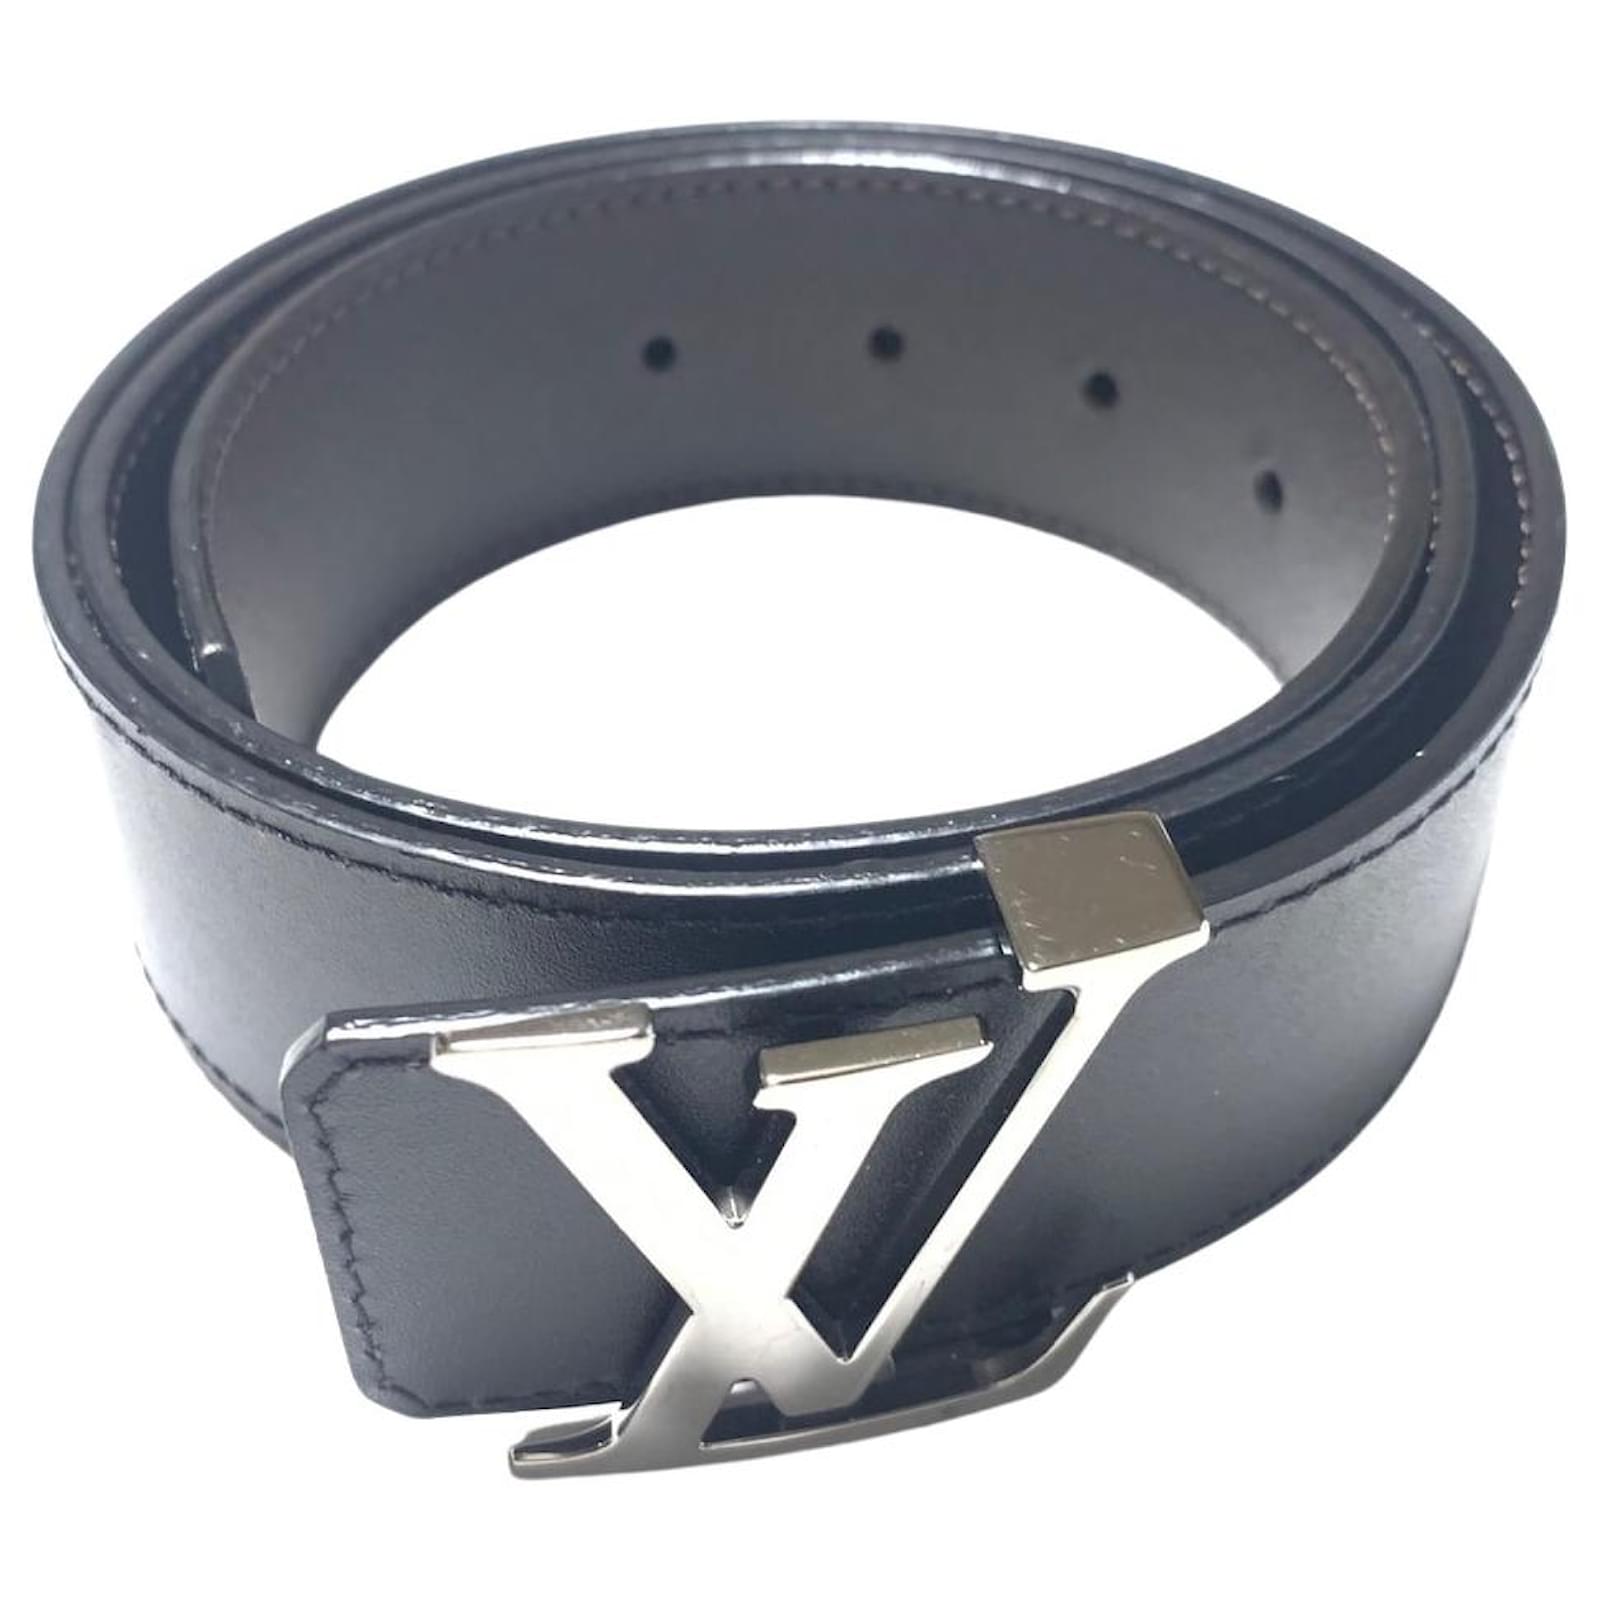 Louis Vuitton LV initials 40mm Reversible Belt Silver Leather. Size 90 cm